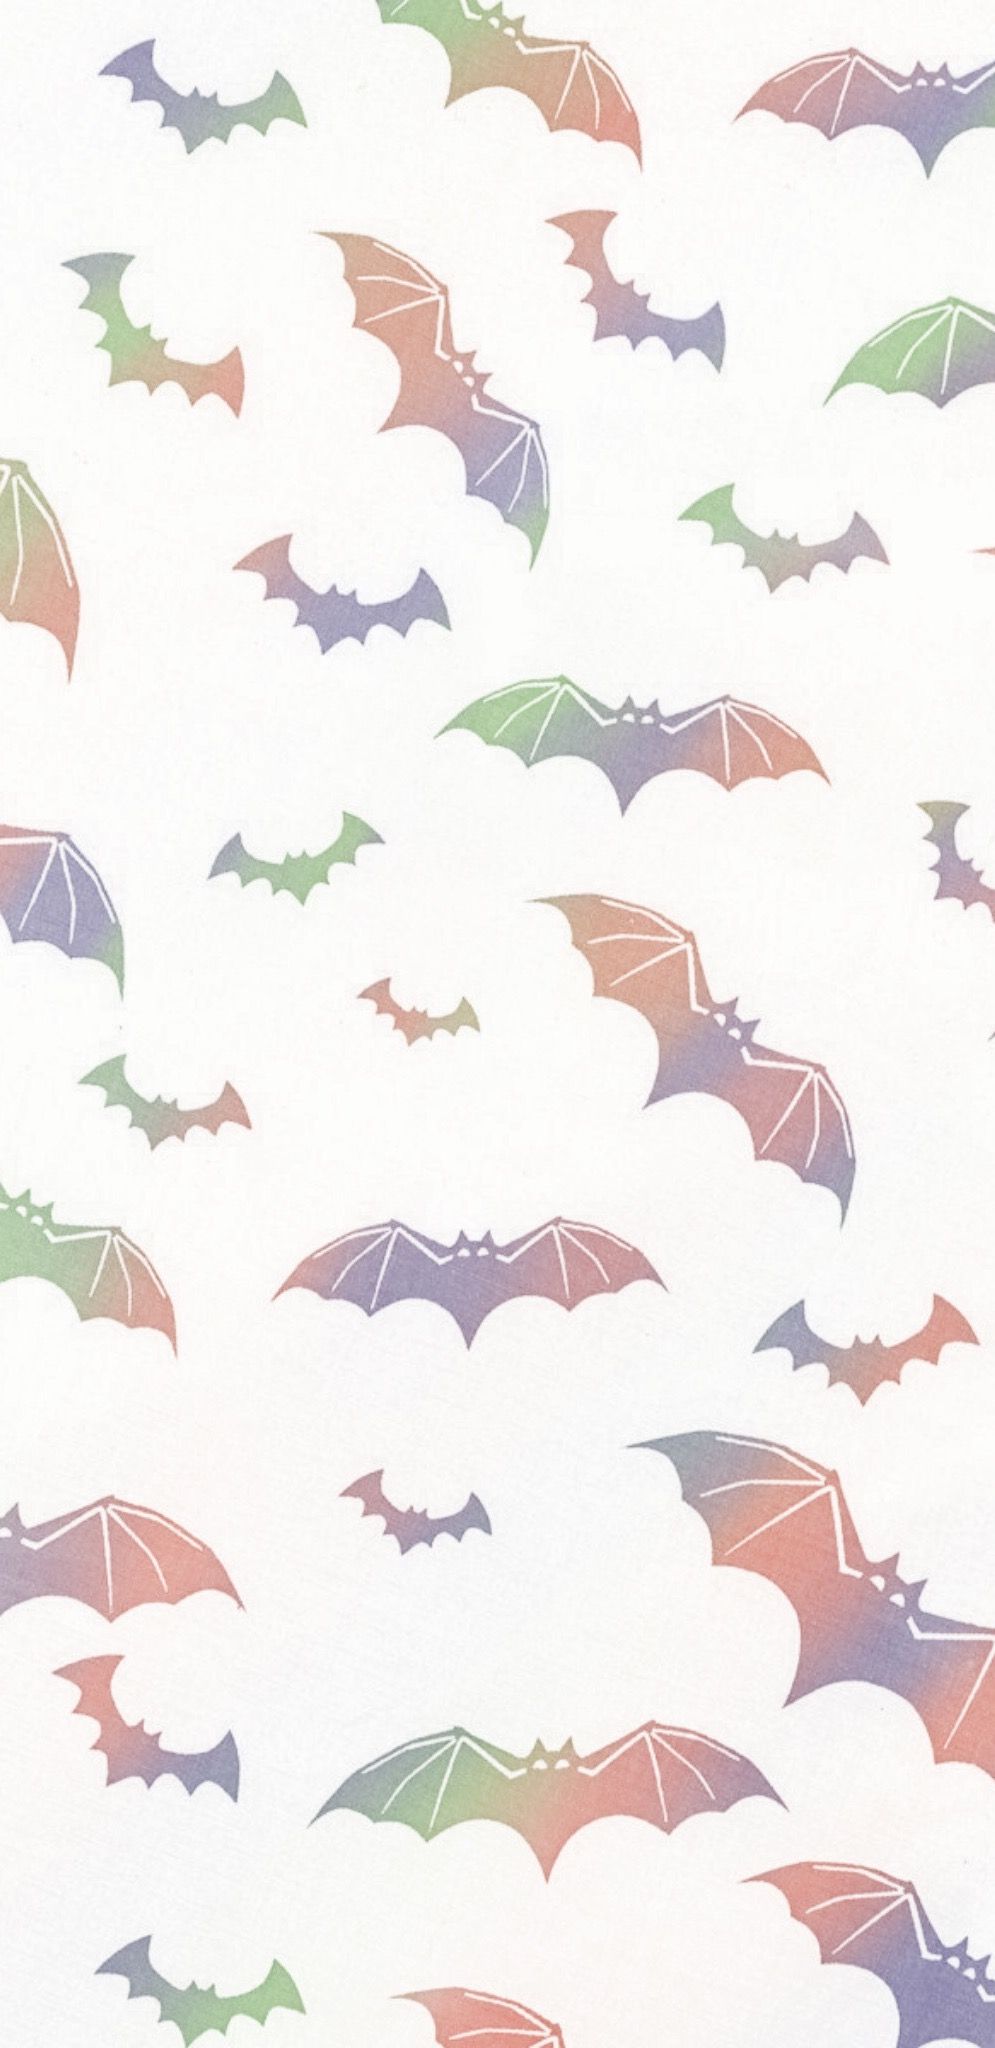 Kawaii Bat Wallpapers